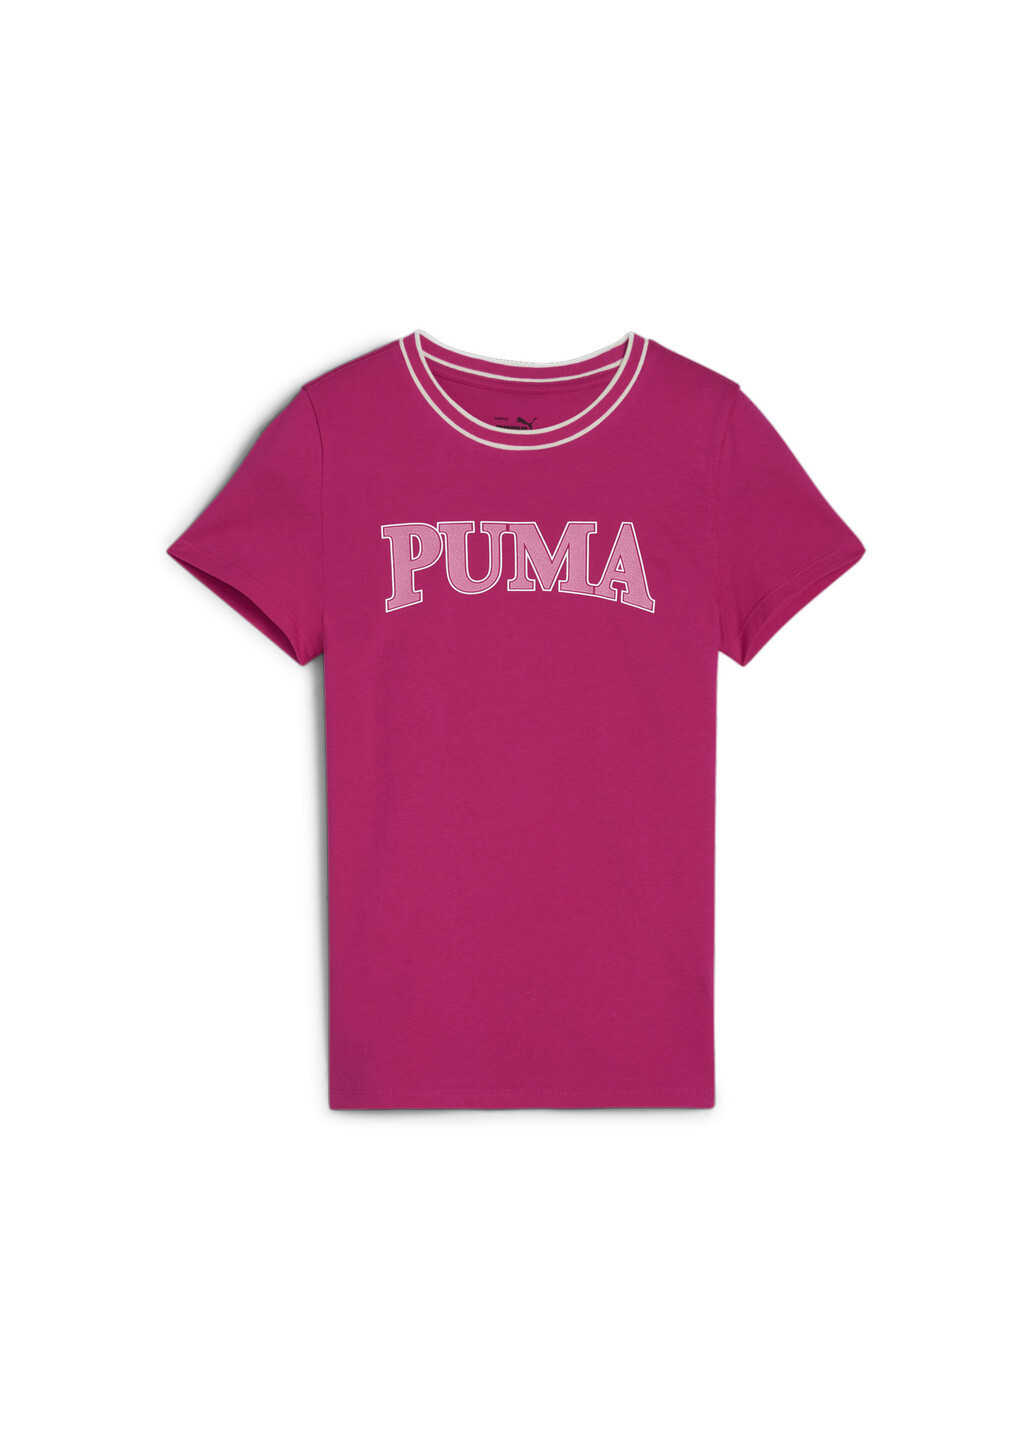 Розовая демисезонная детская футболка squad youth tee Puma